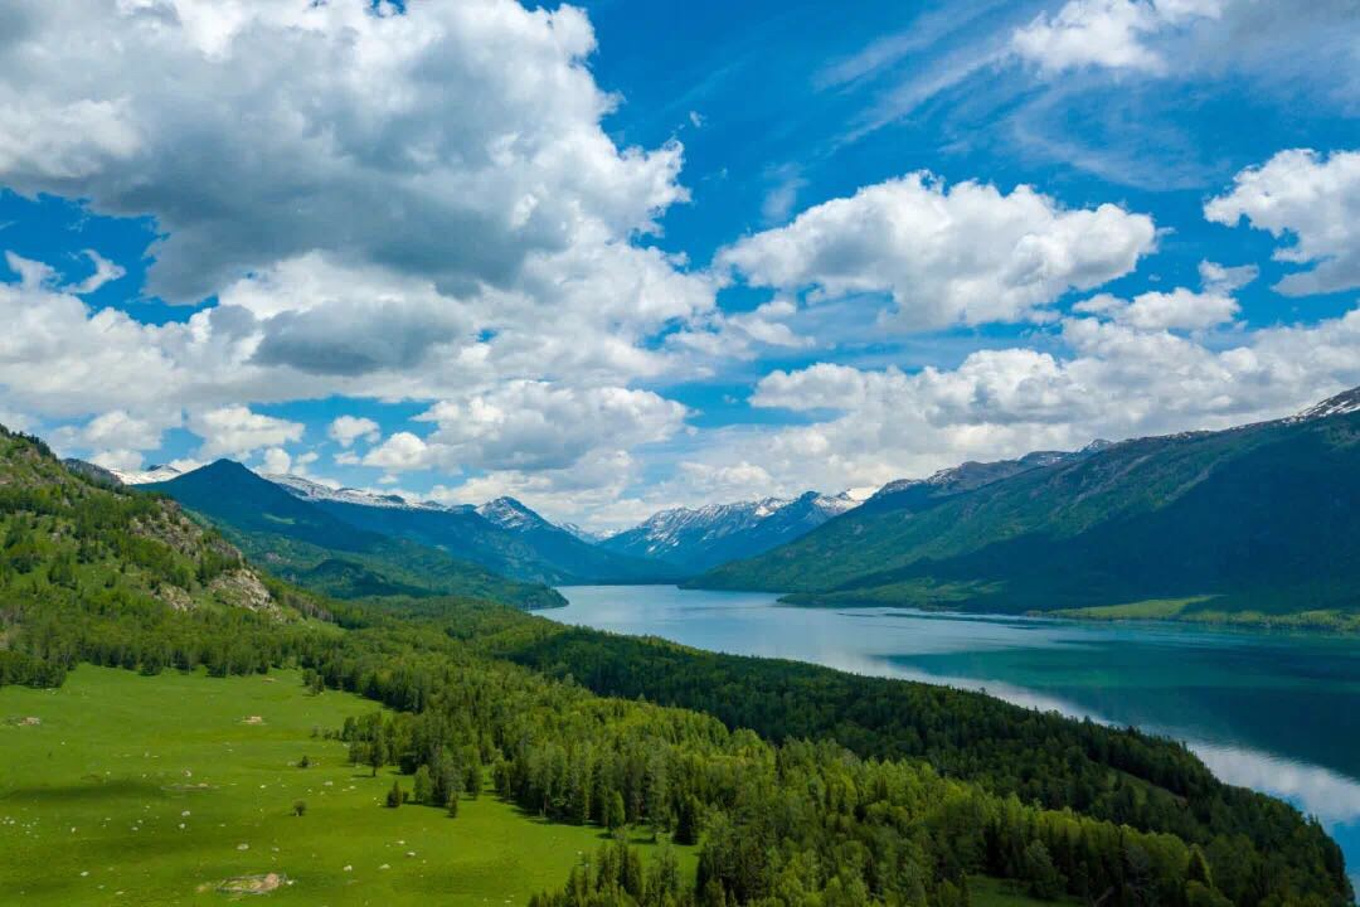 新疆喀纳斯湖的美丽传说_【新疆旅游攻略】_领袖户外